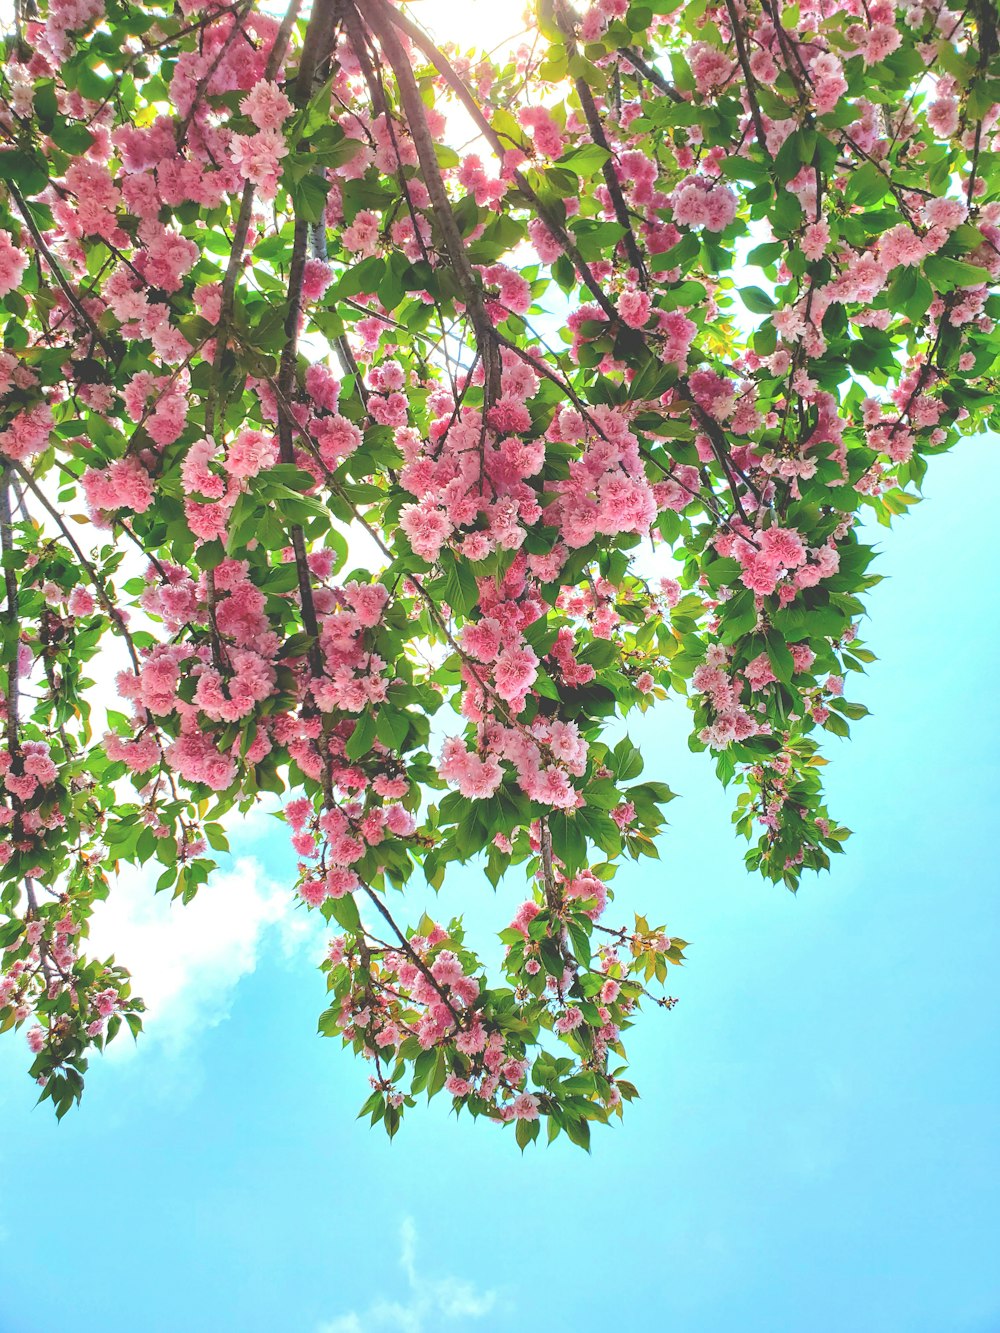 flores cor-de-rosa estão desabrochando nos galhos de uma árvore